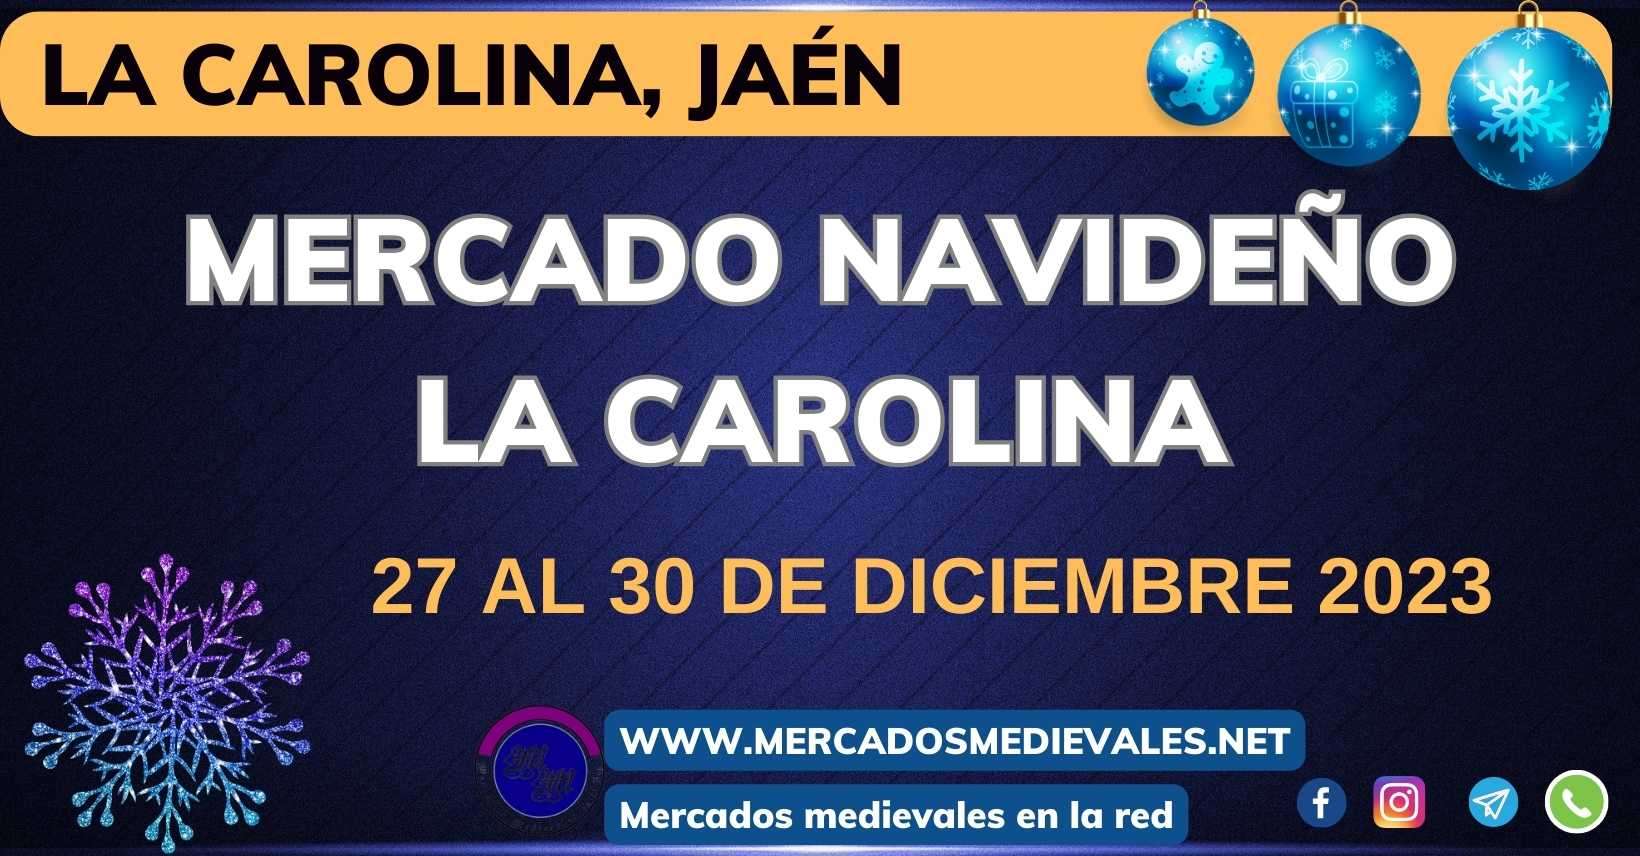 MERCADOS MEDIEVALES - MERCADO NAVIDEÑO DE LA CAROLINA, JAEN 2023 w